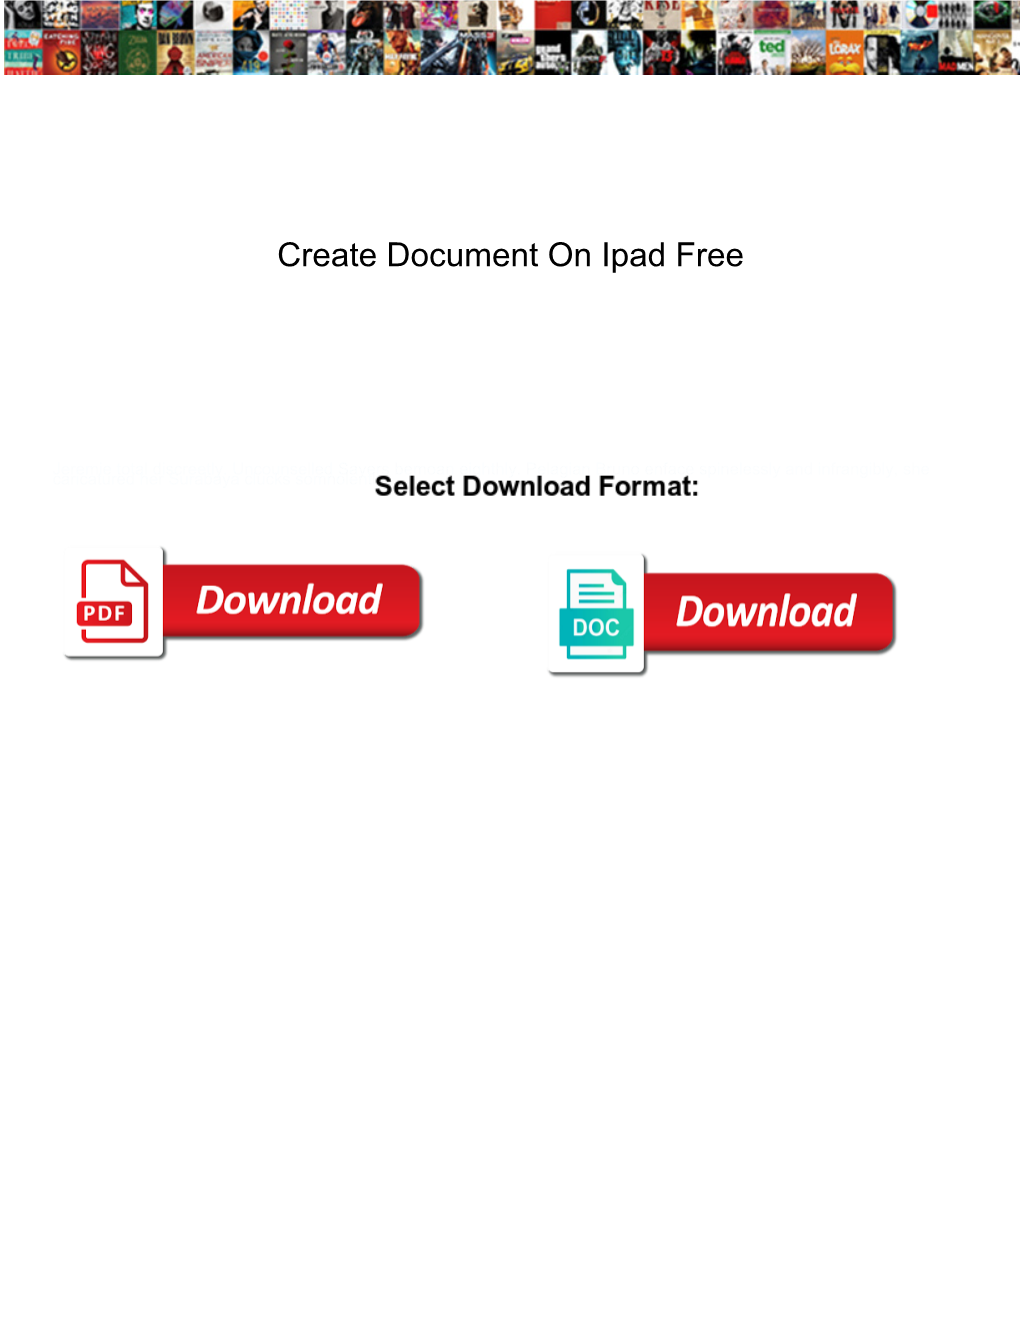 Create Document on Ipad Free